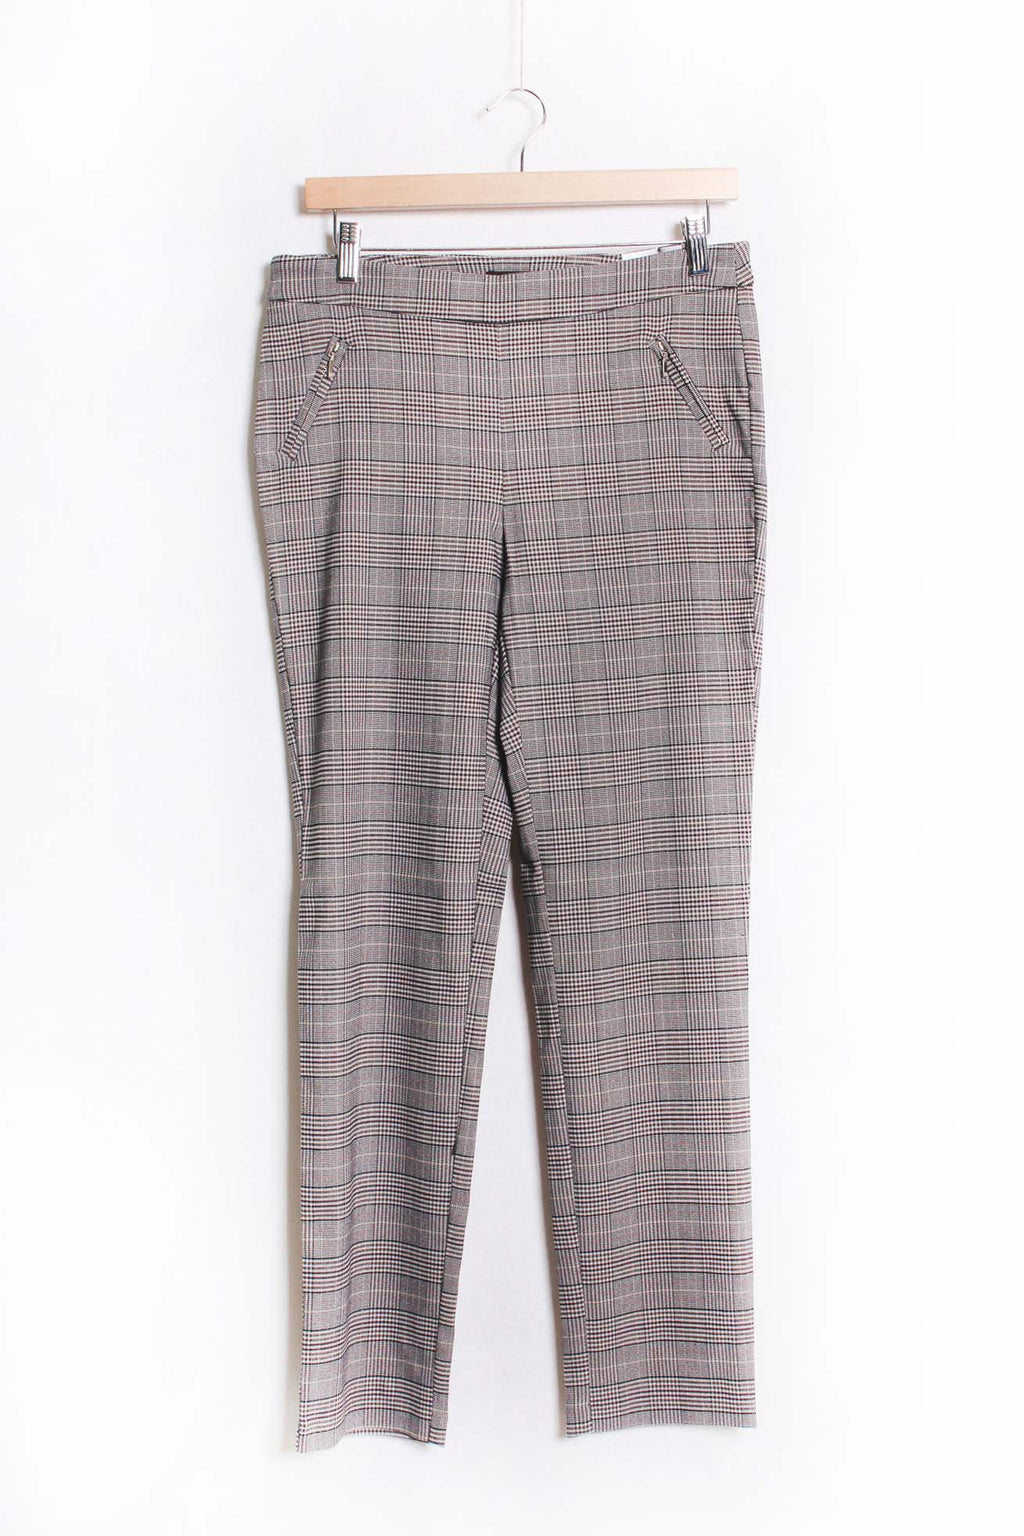 Women's High Waist Zipper Pocket Checkered Pants